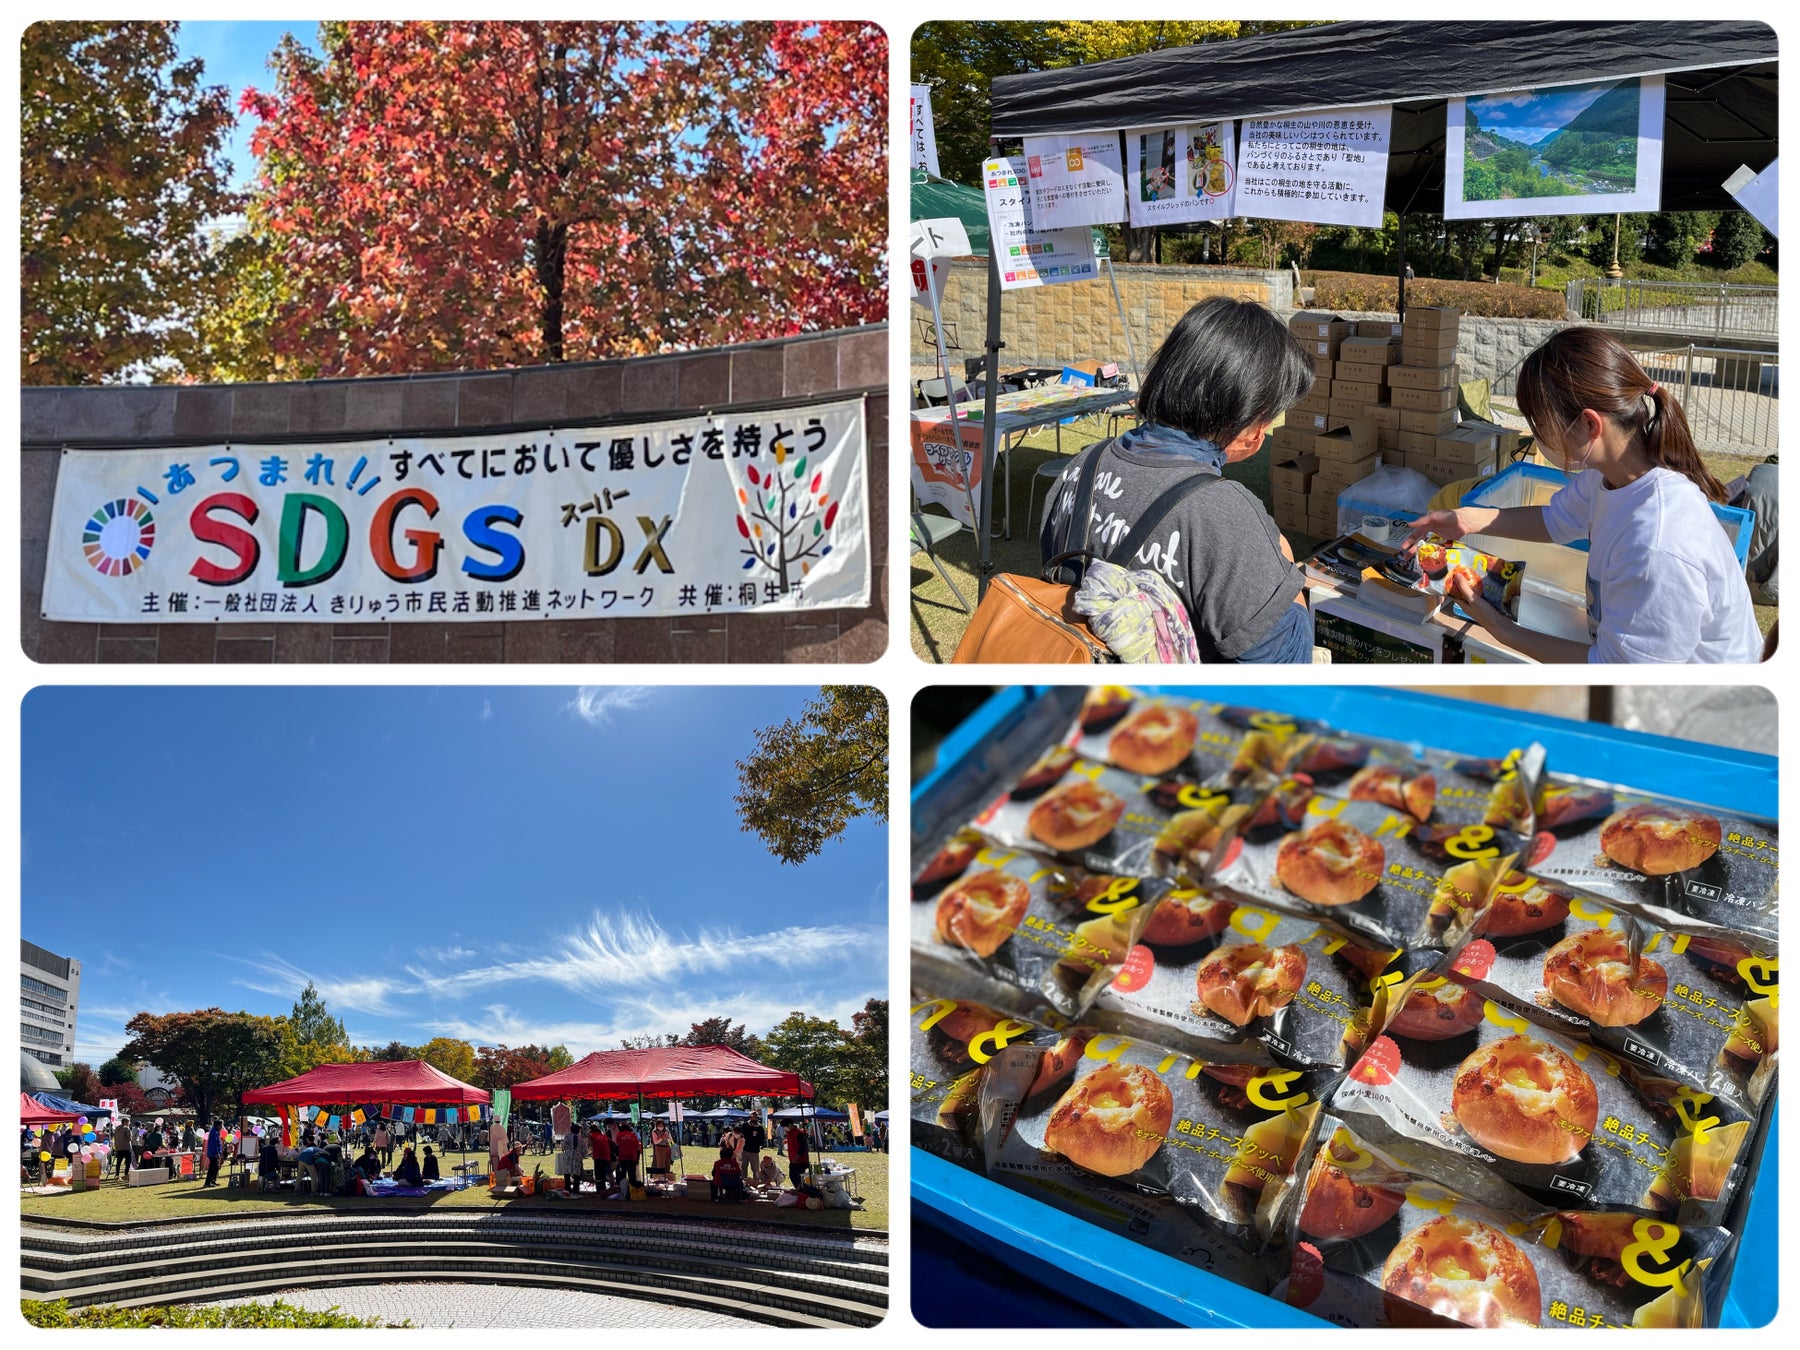 桐生市民活動推進センターゆい主催のSDGs取り組み推進イベントへロスパンを寄付